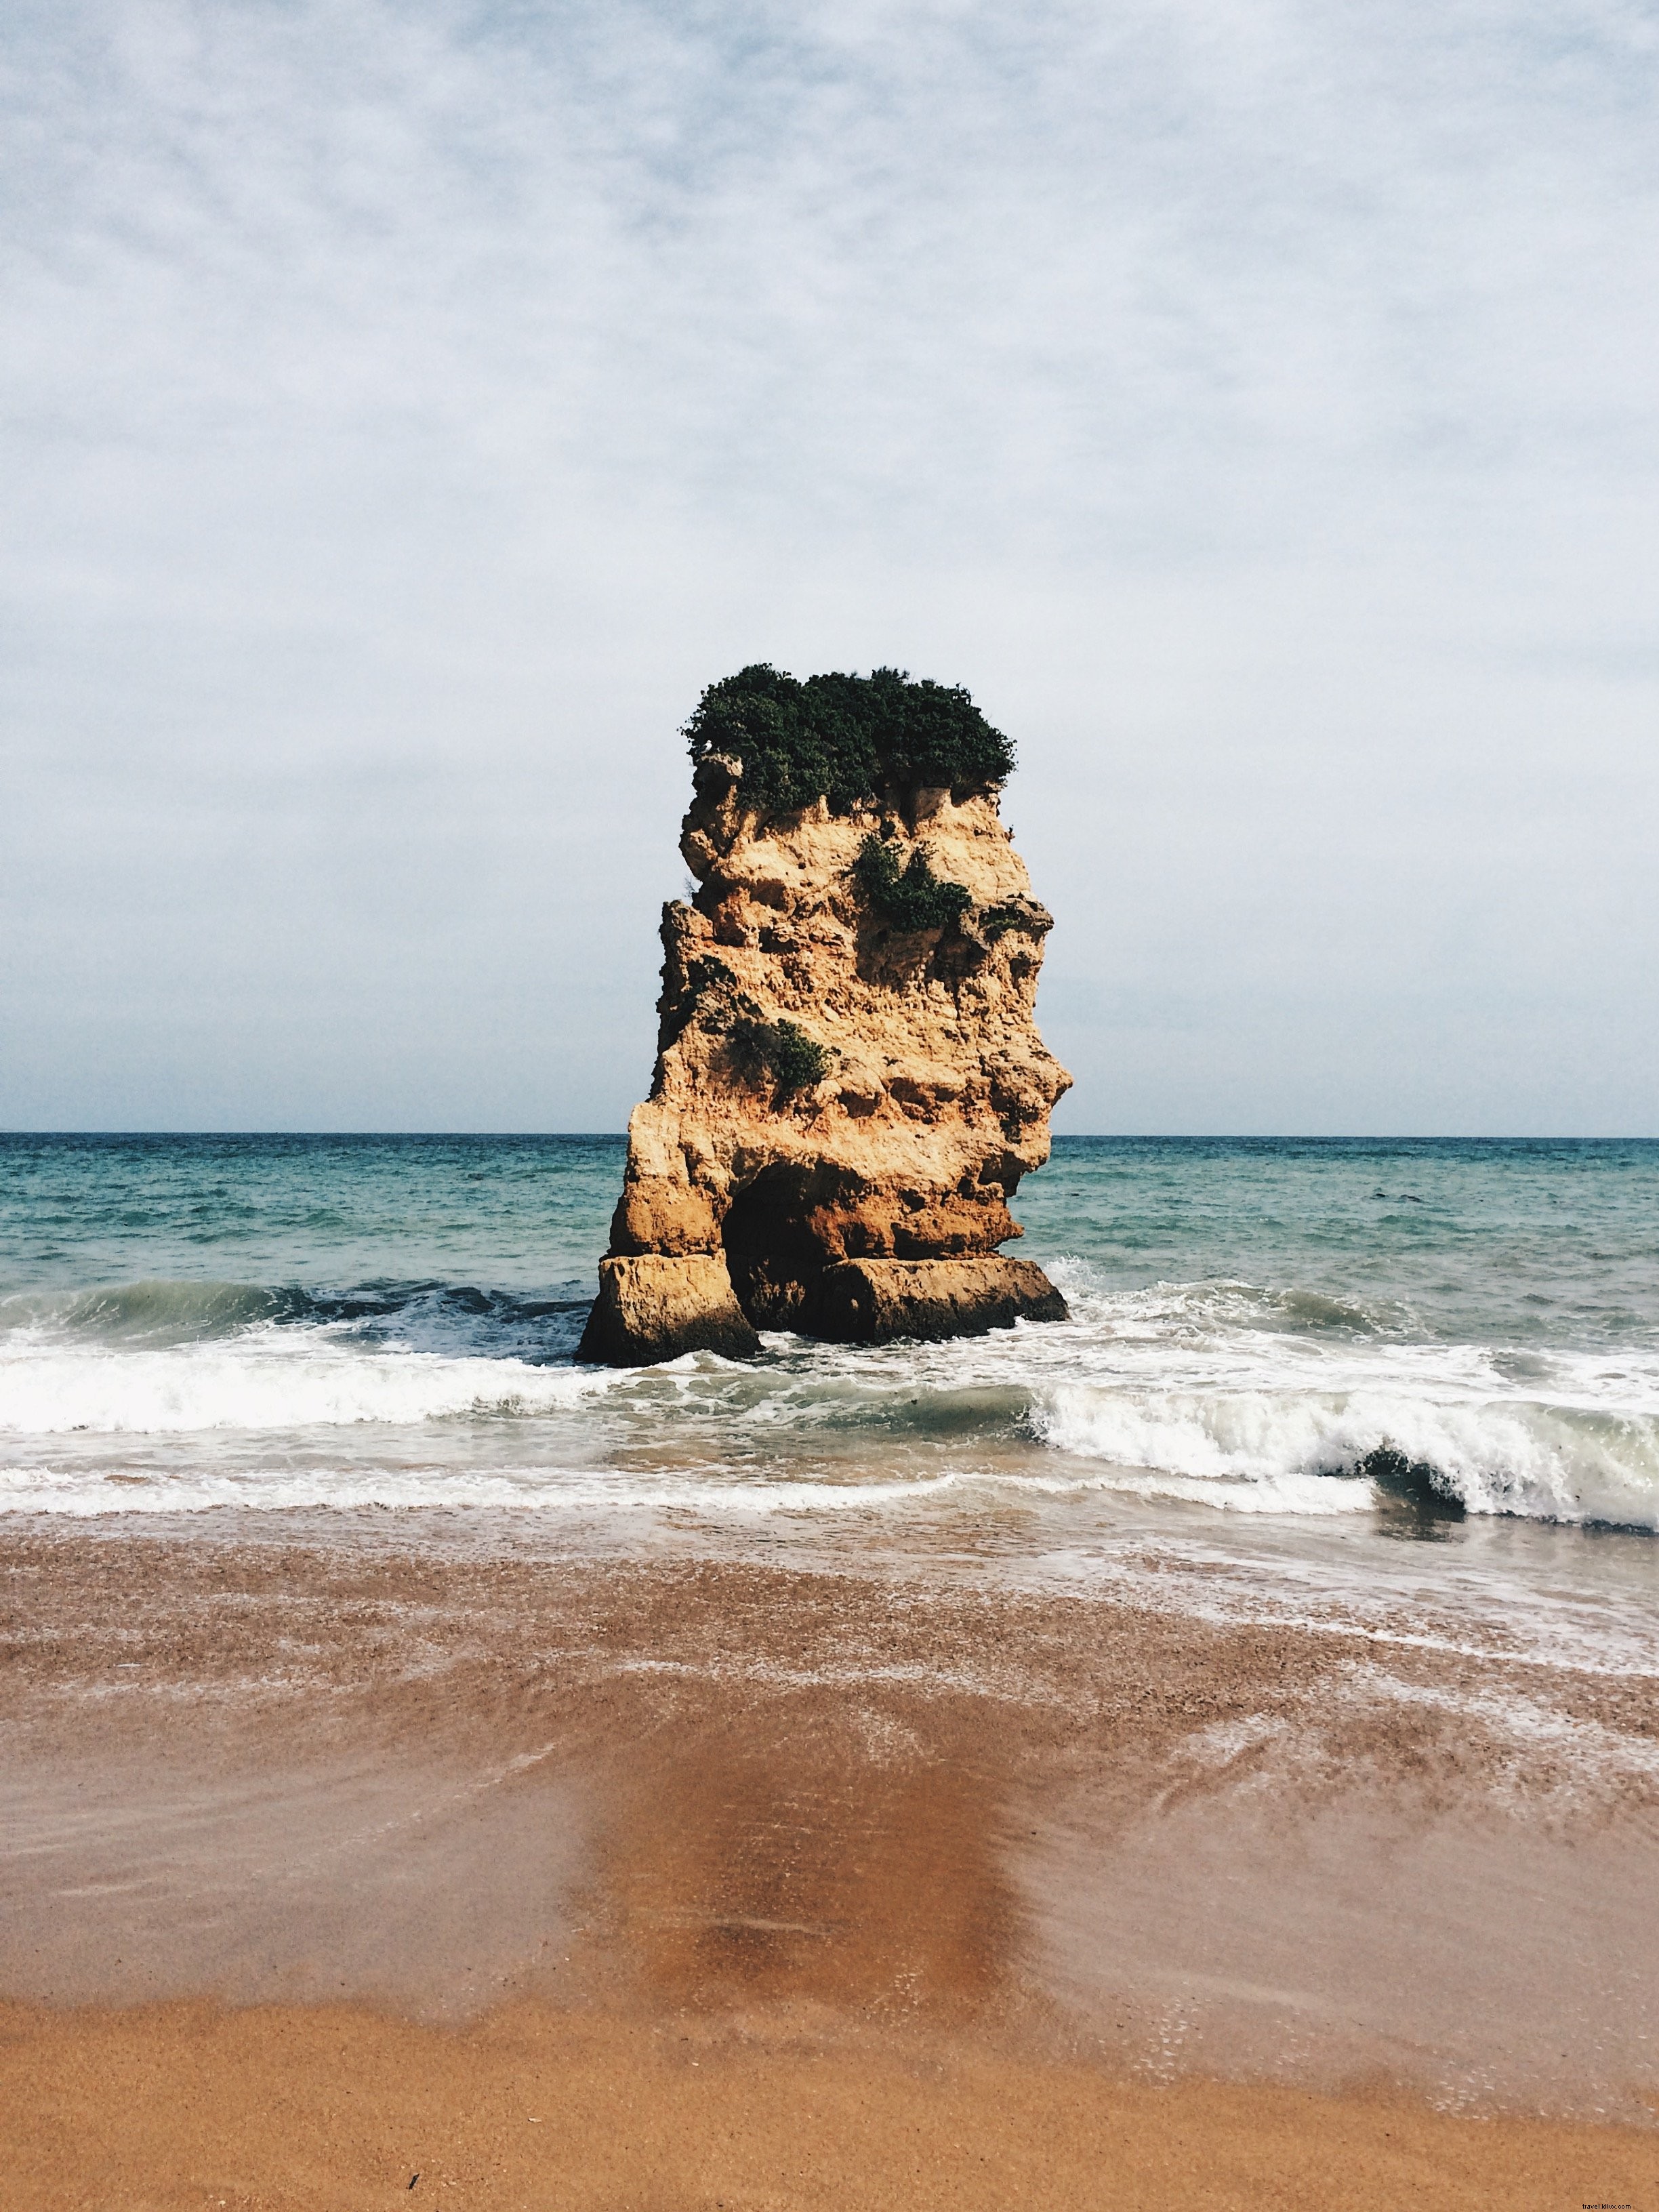 Un gros rocher monte la garde au milieu de l océan Photo 